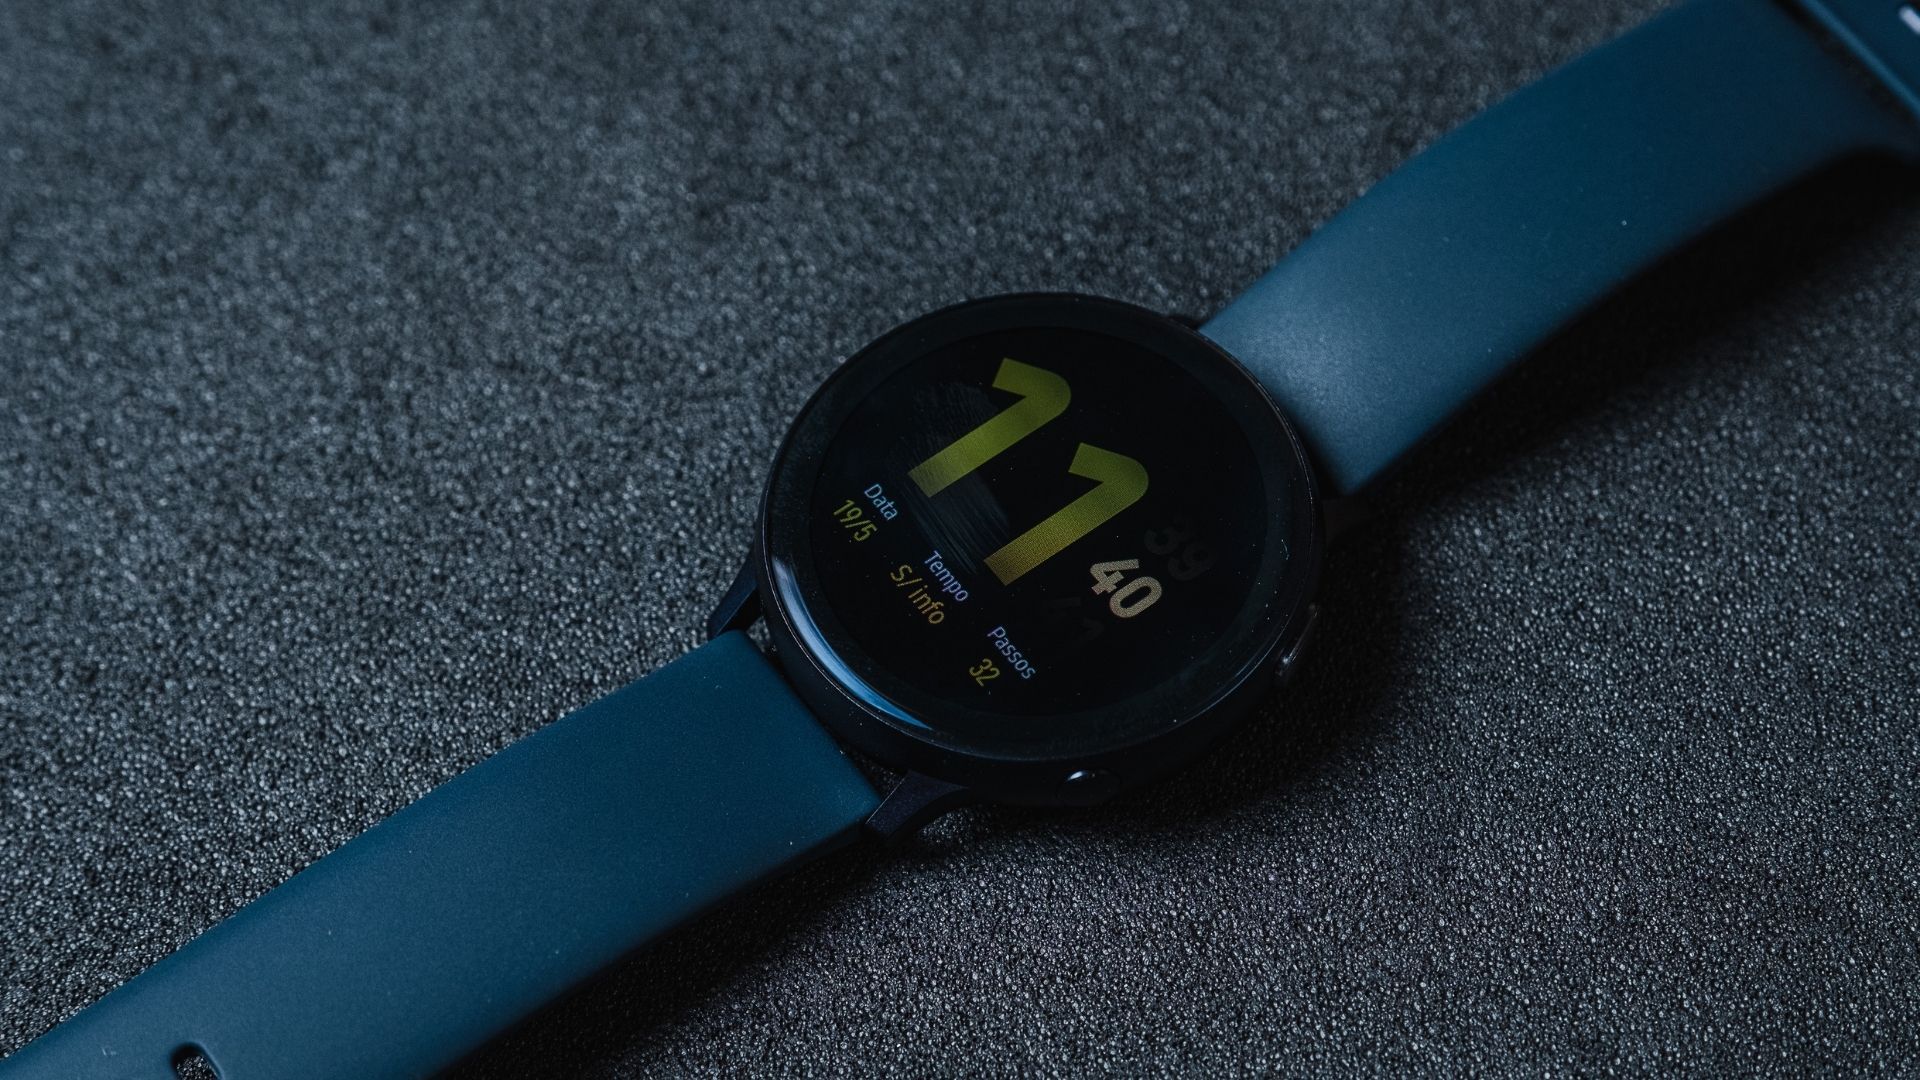 Galaxy Watch Active 2 se destaca com funções fitness e de saúde